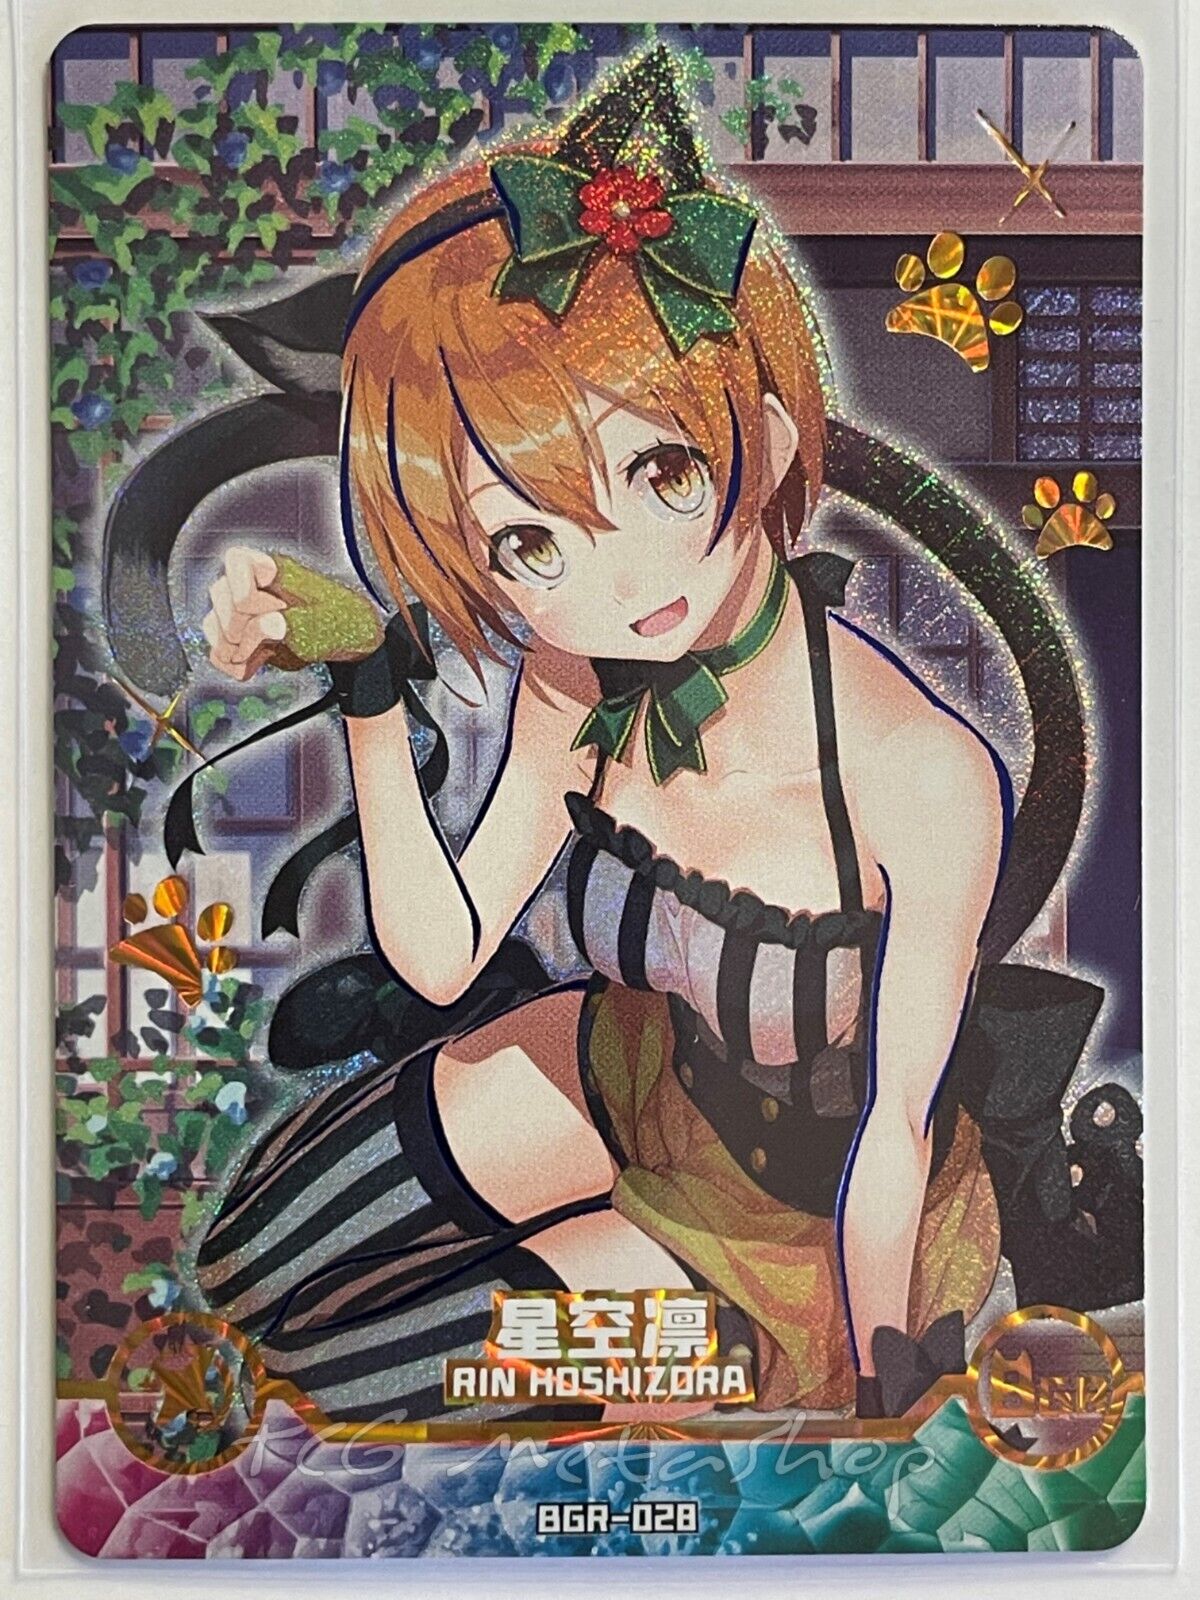 🔥 [BGR] Maiden / Girl Party - Goddess Story Bikini Waifu Anime Doujin Cards 🔥